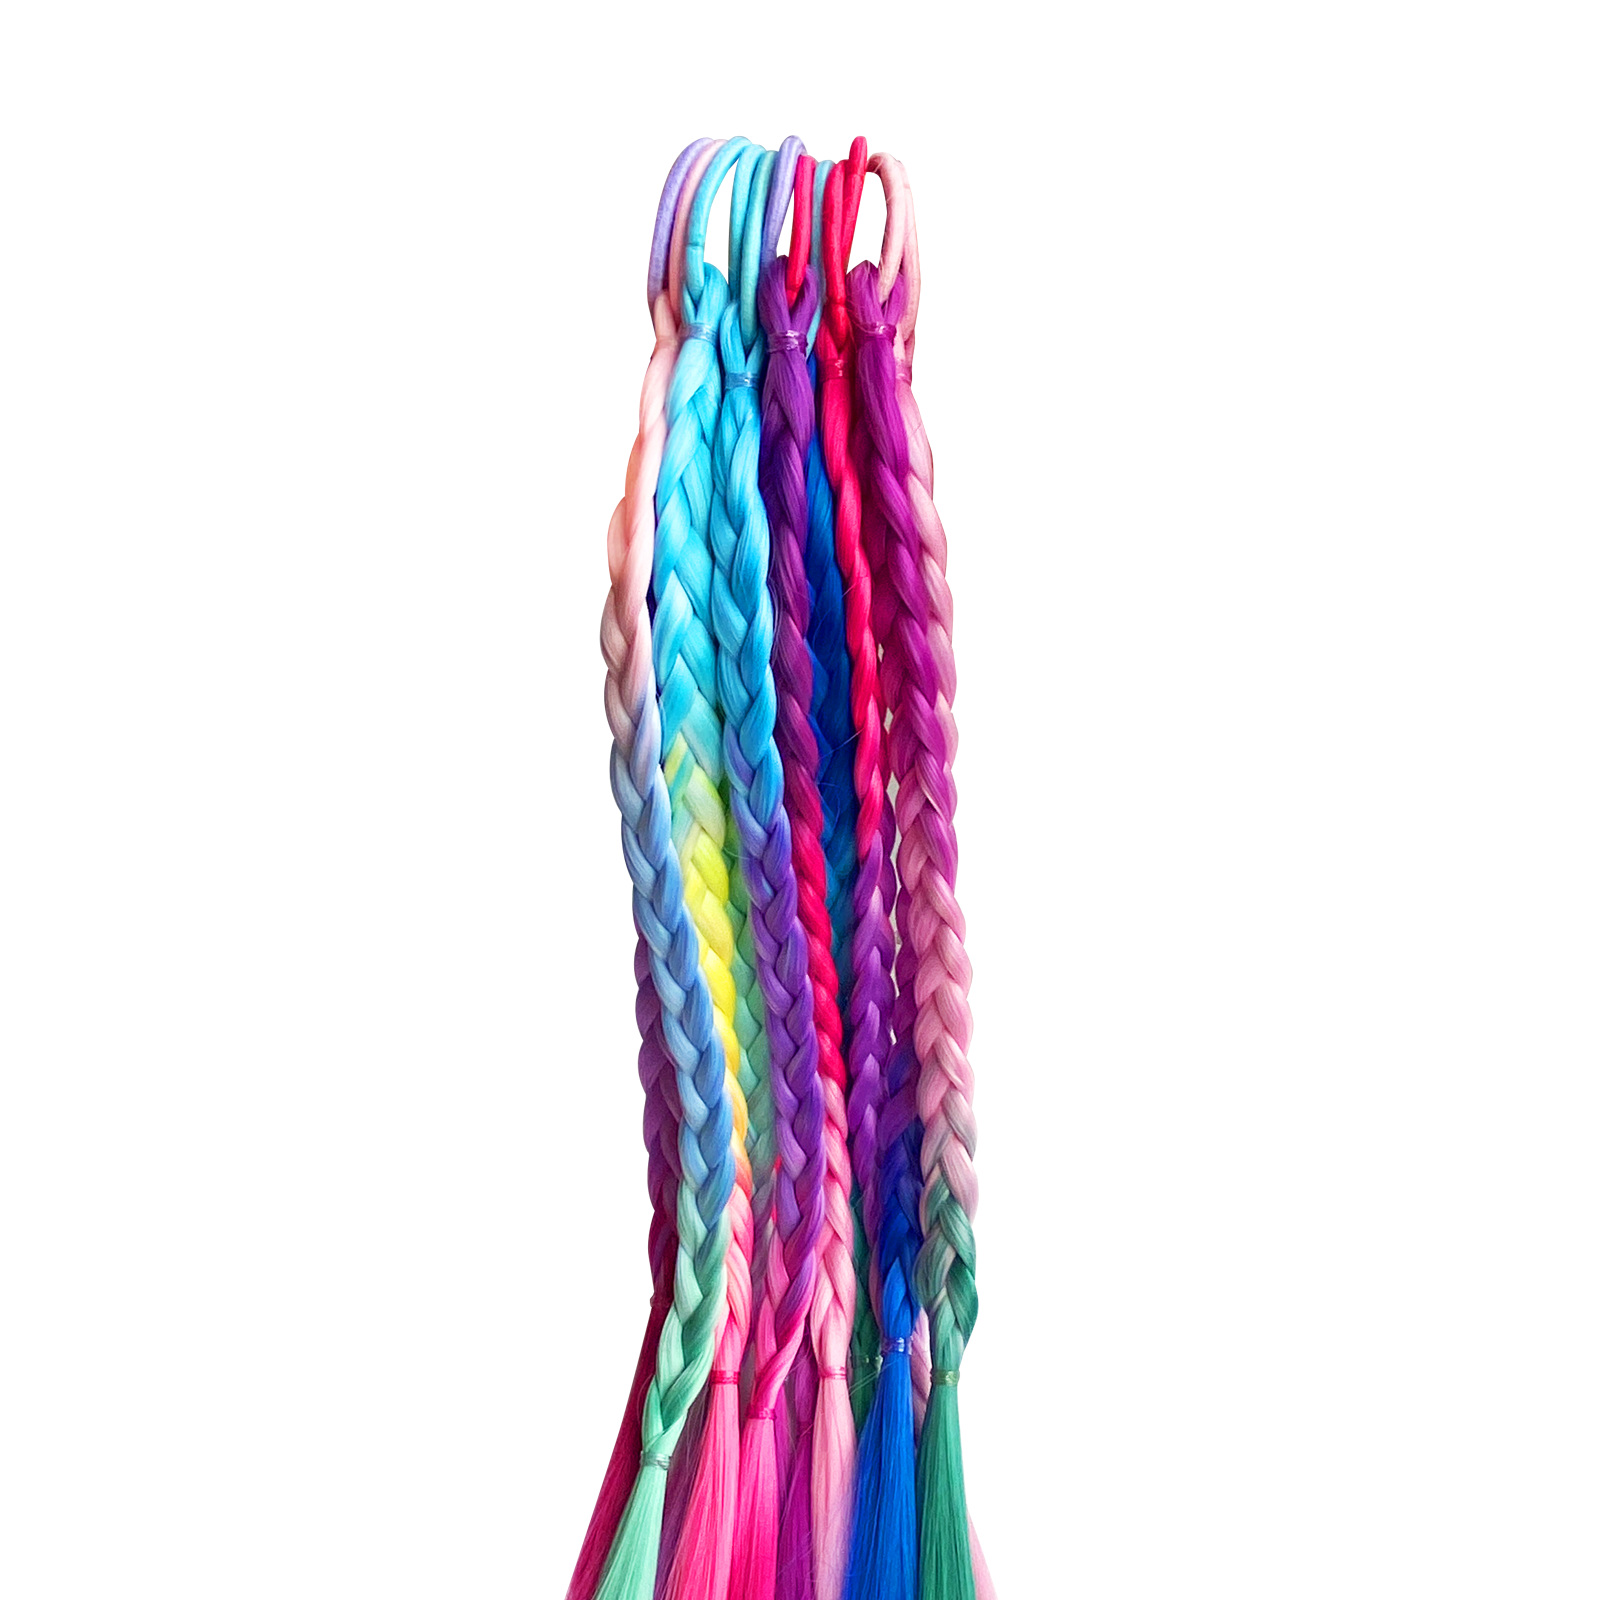 Детские аксессуары для волос Charites цветные косички G216 разноцветный